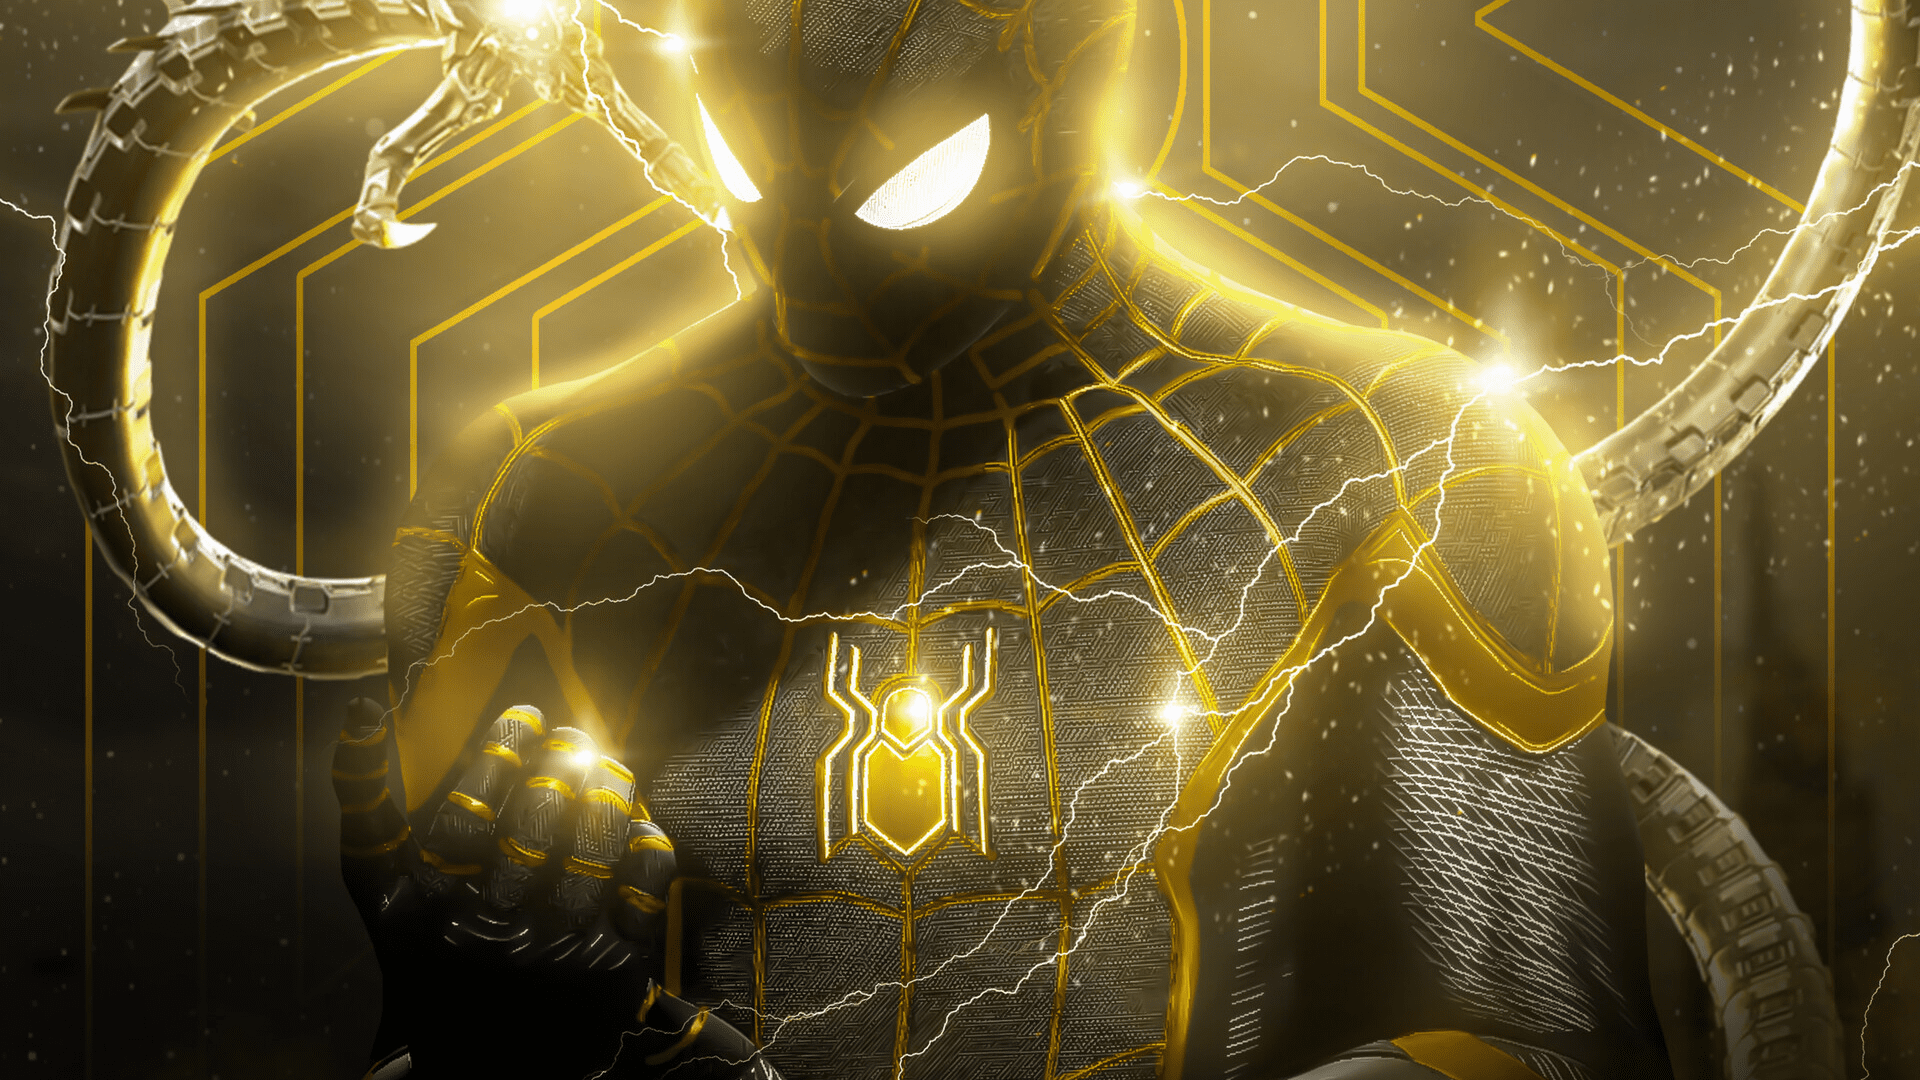 Spider Man No Way Home Wallpaper Spider Man 2021 Background Download